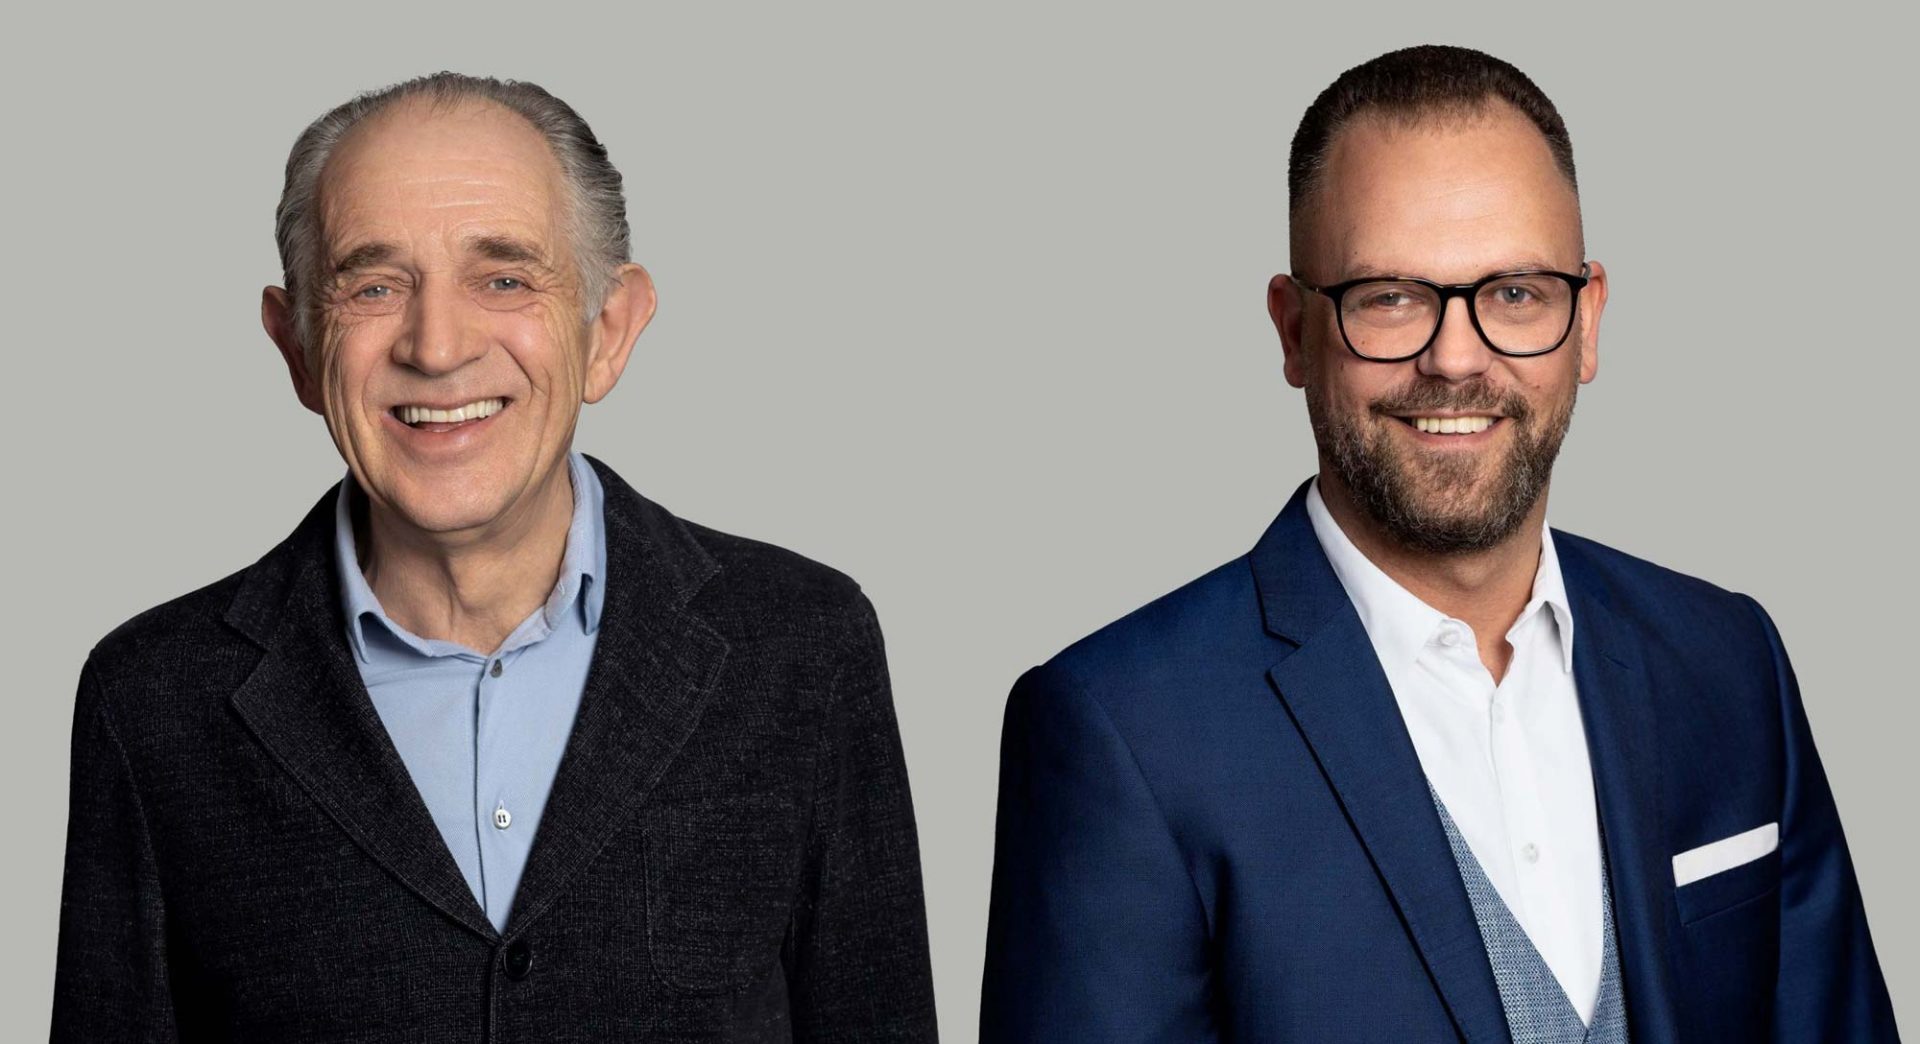 Portraits von AMRs Gründer Ulrich Buchholz und dem neuen Managing Director Herbert Hoeckel